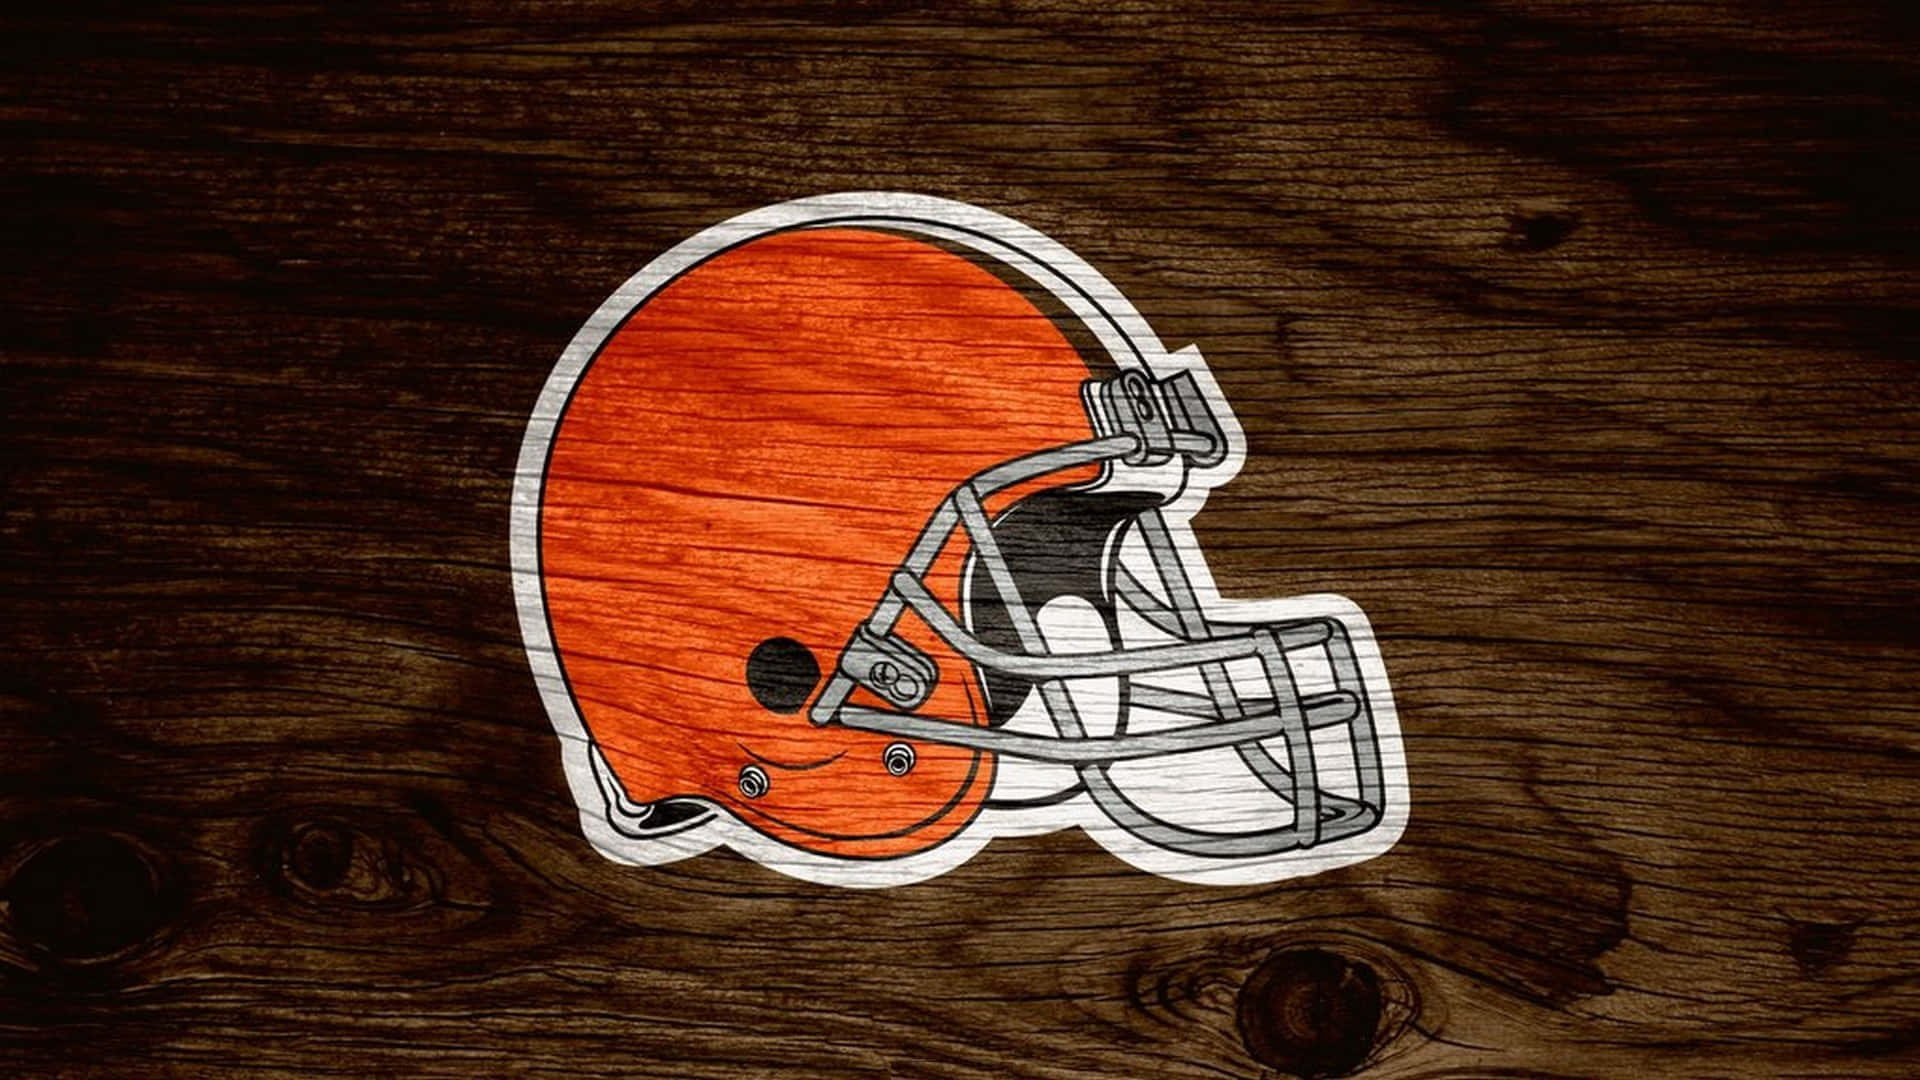 Cleveland Browns HD Wallpaper on Behance  Cleveland browns Cleveland  browns wallpaper Cleveland browns football